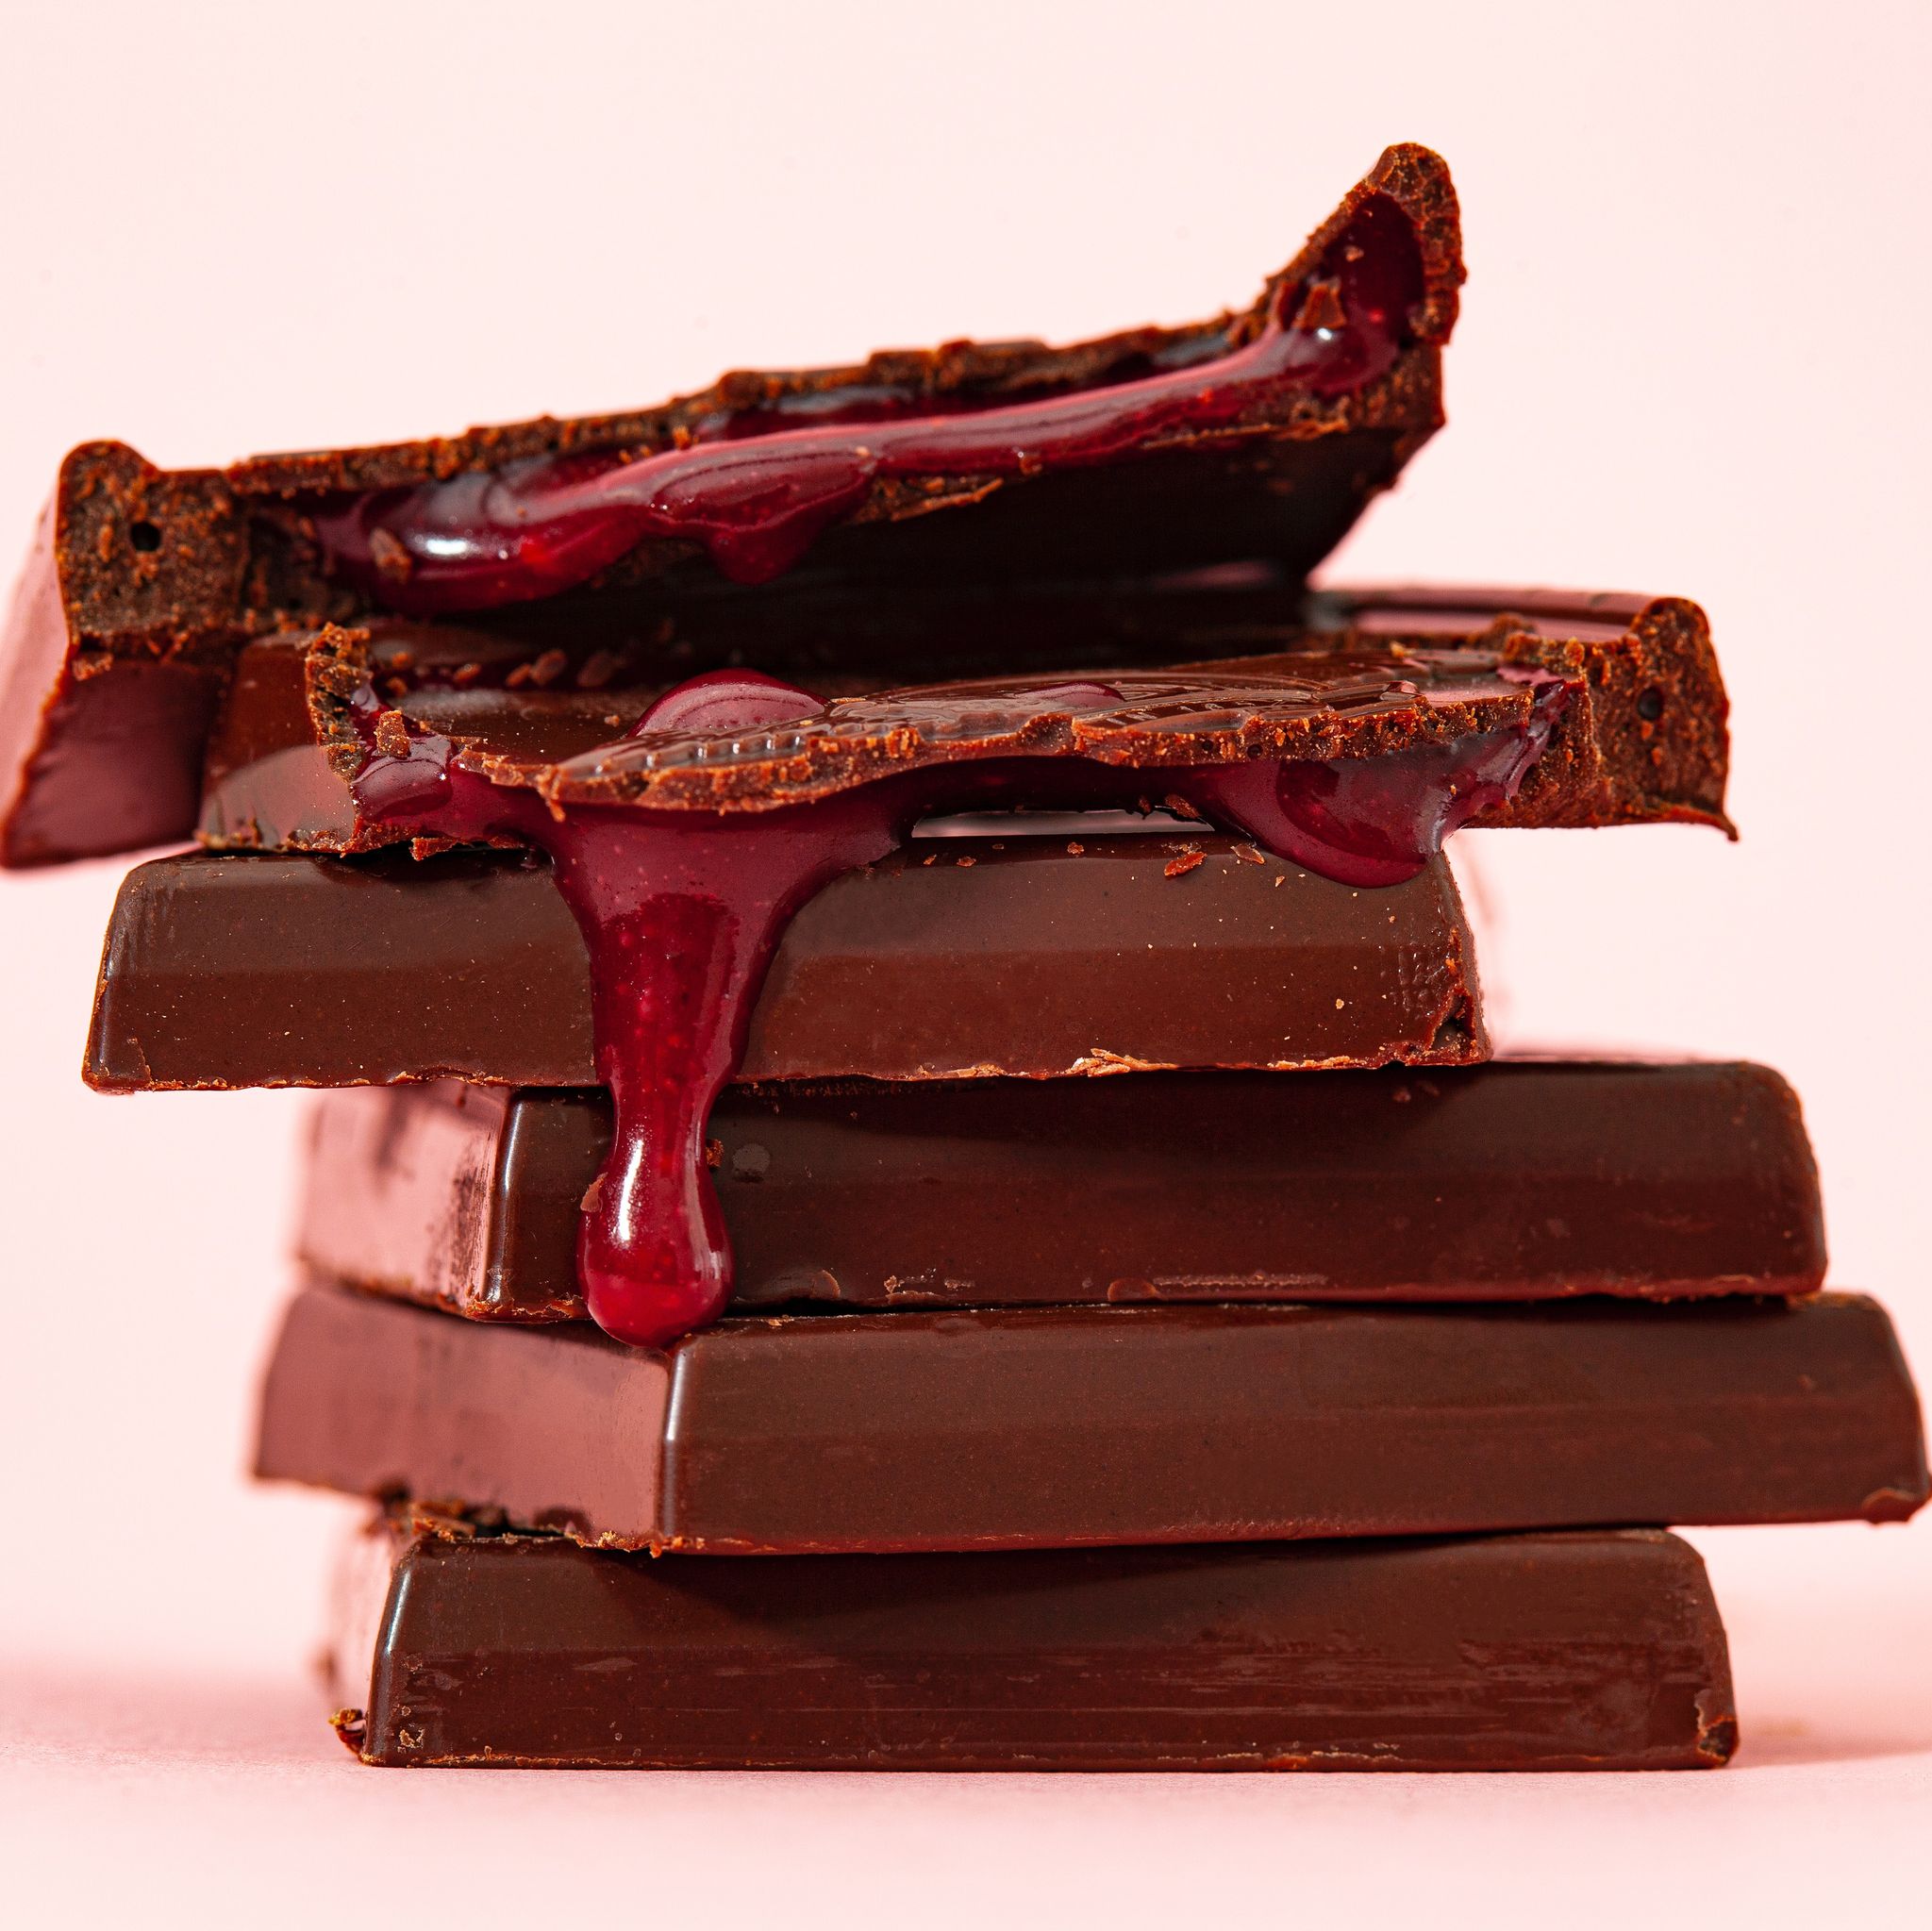 Comprar Chocolate sin azucar puro valo en Supermercados MAS Online